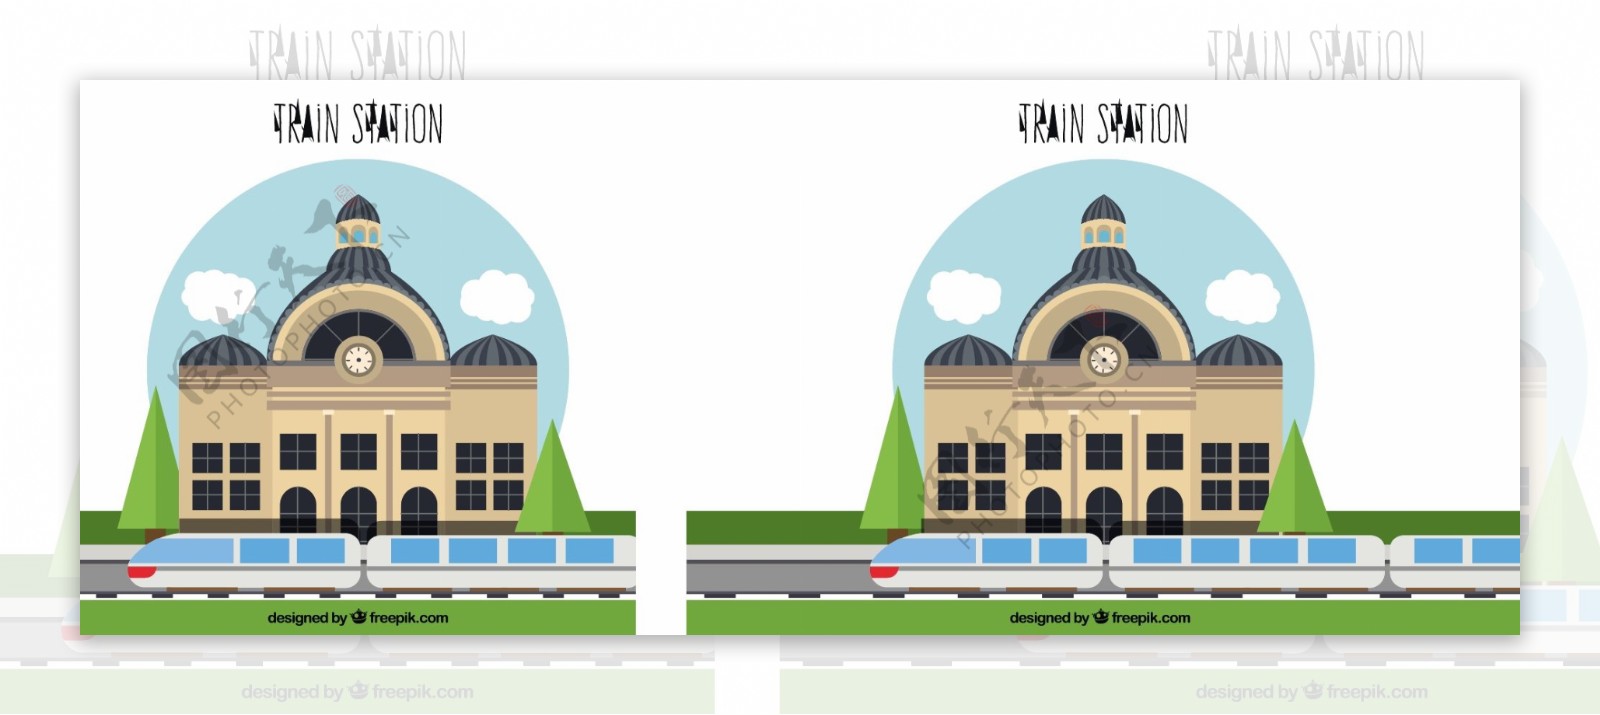 火车站平面设计图形素材